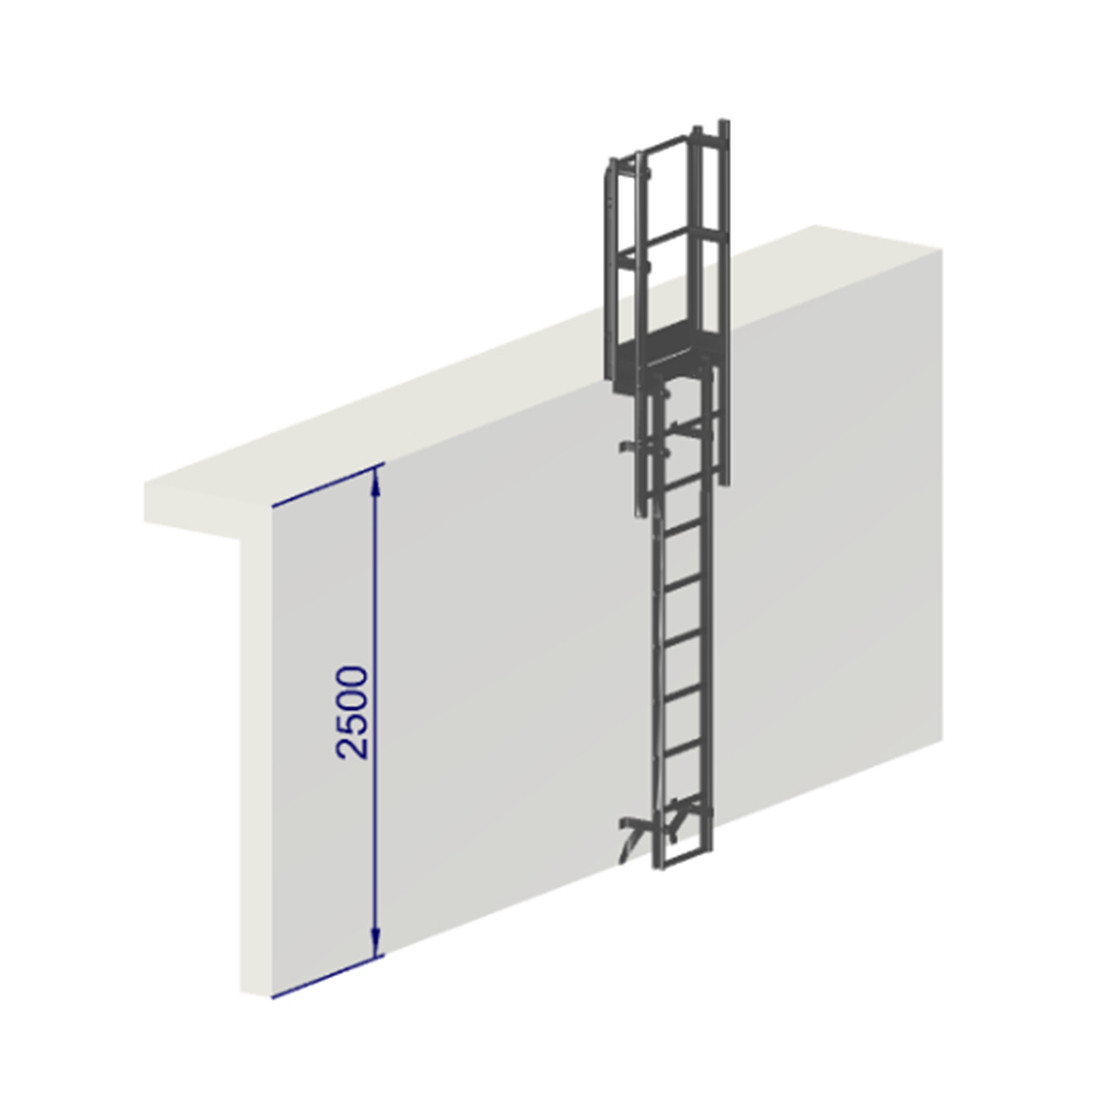 Escalera de protección dorsal altura 2500 mm - Crinolina con aros de protección EN ISO 14122-4